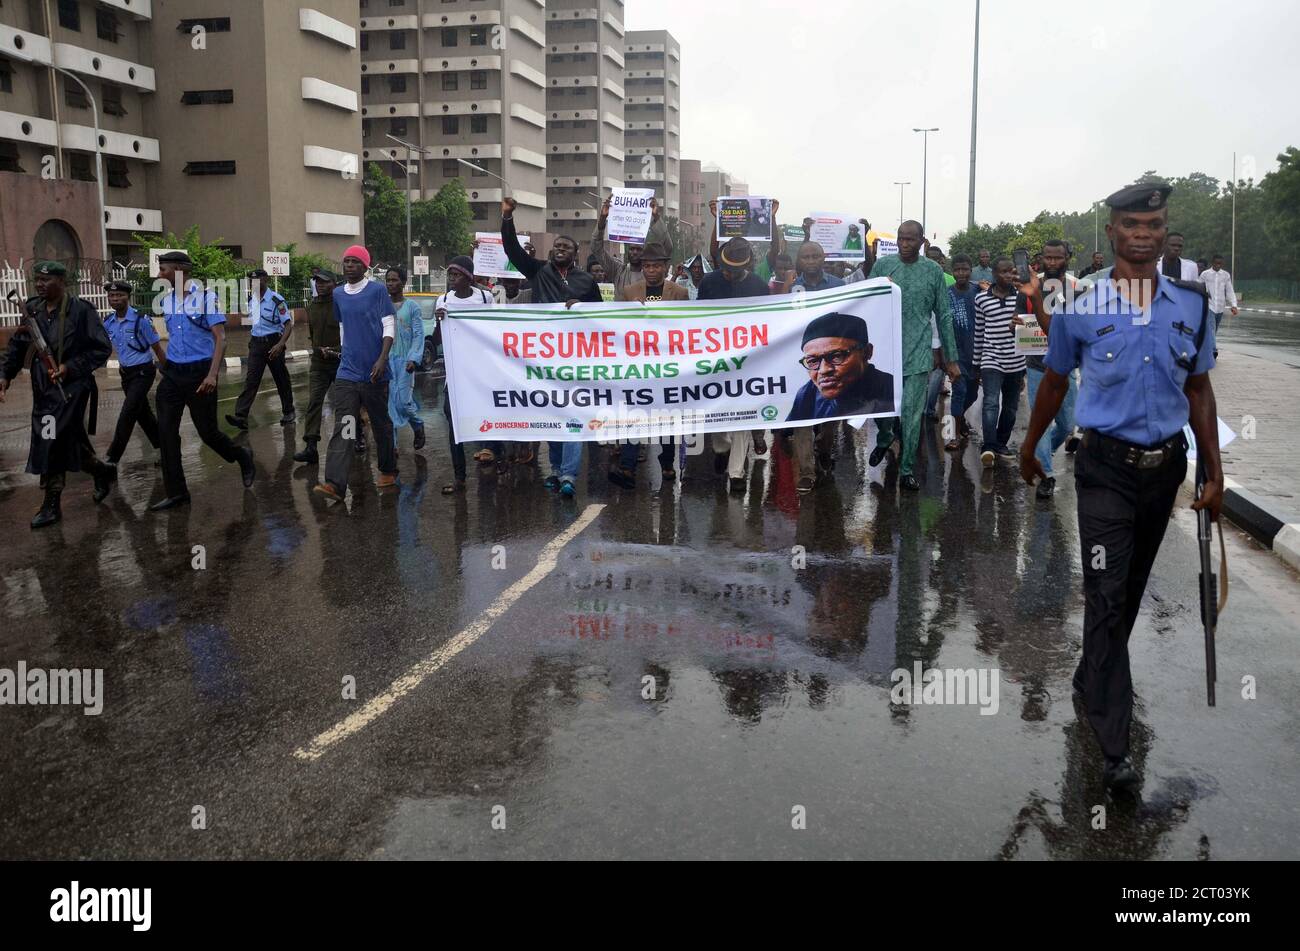 Anhänger der Bewegung Our mumu don do nehmen an einem Protest Teil, der Präsident Muhammadu Buhari am 7. August 2017 in Abuja, Nigeria, zur Wiederaufnahme oder zum Rücktritt auffordert. REUTERS/Afolabi Sotunde Stockfoto